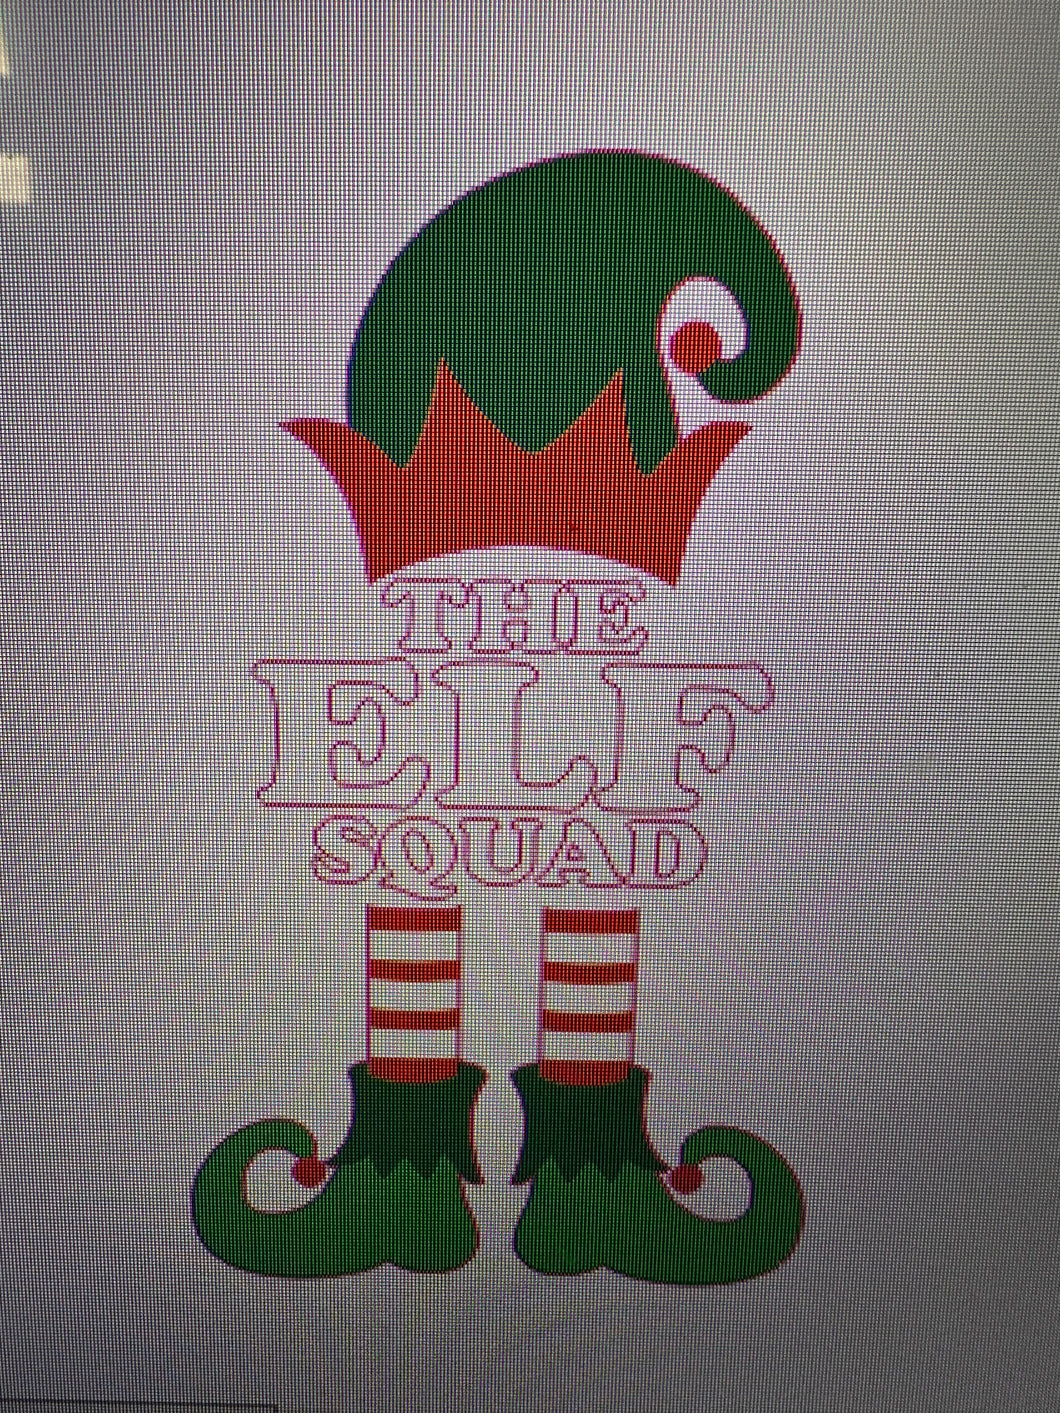 The Elf Squad